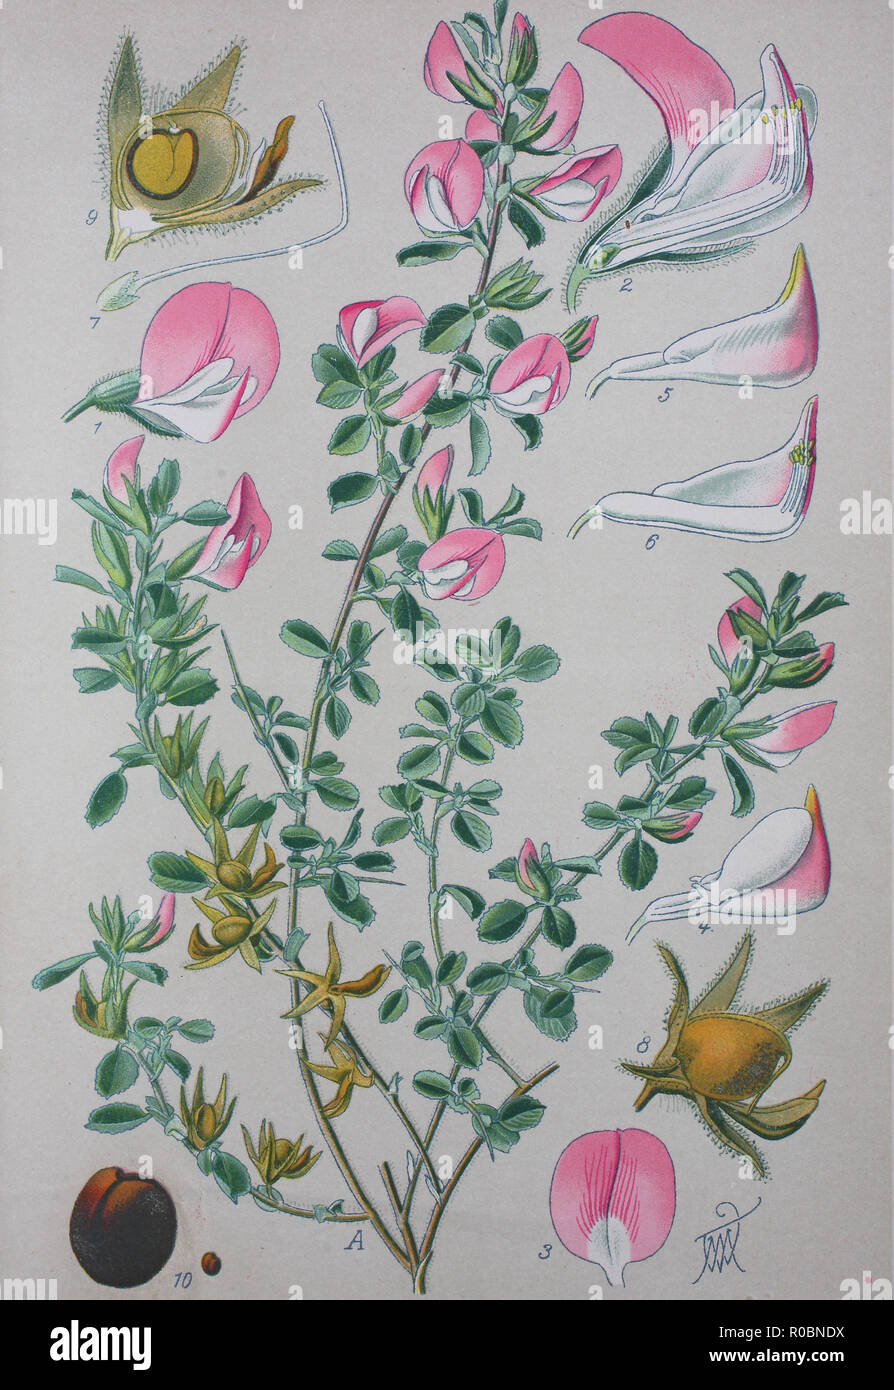 L'amélioration de la reproduction numérique de haute qualité : Ononis repens ou restharrow commun est une espèce de plante du genre Ononis Banque D'Images